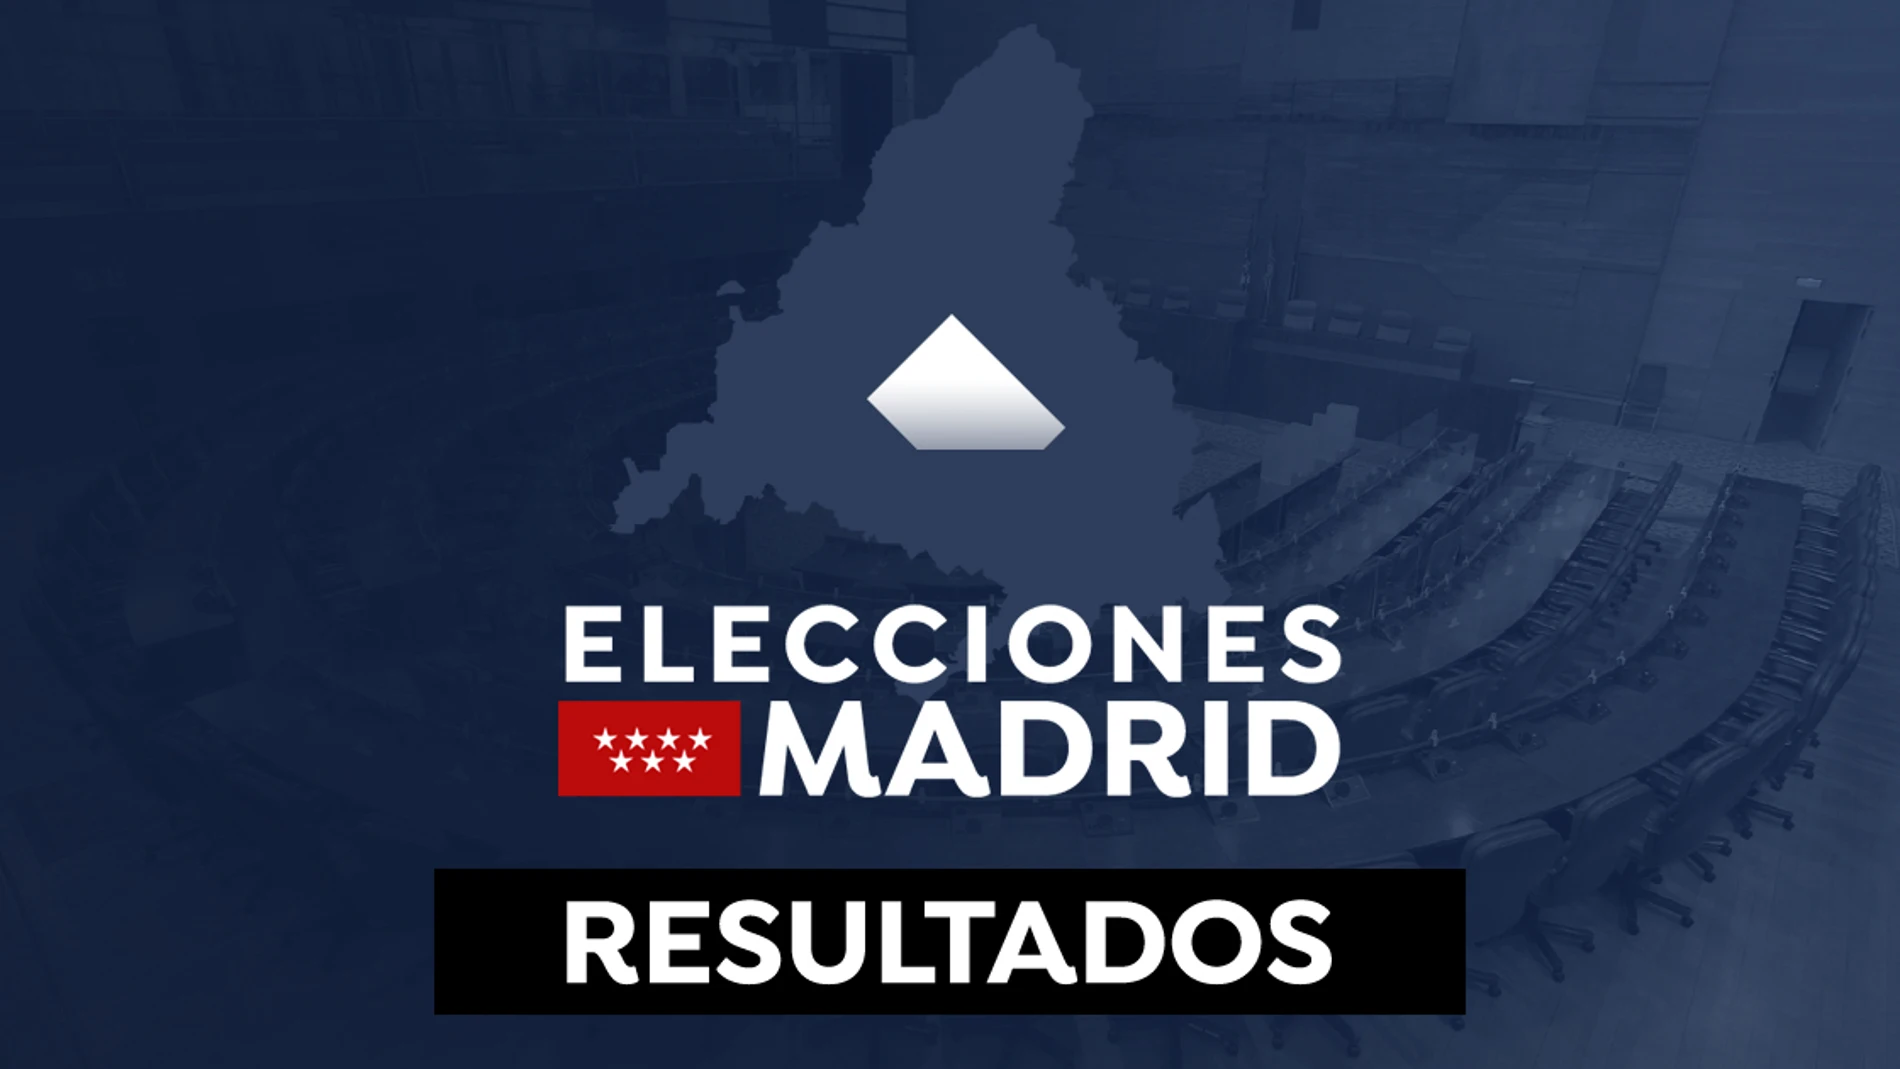 Resultado de las elecciones en la ciudad de Madrid en 2021